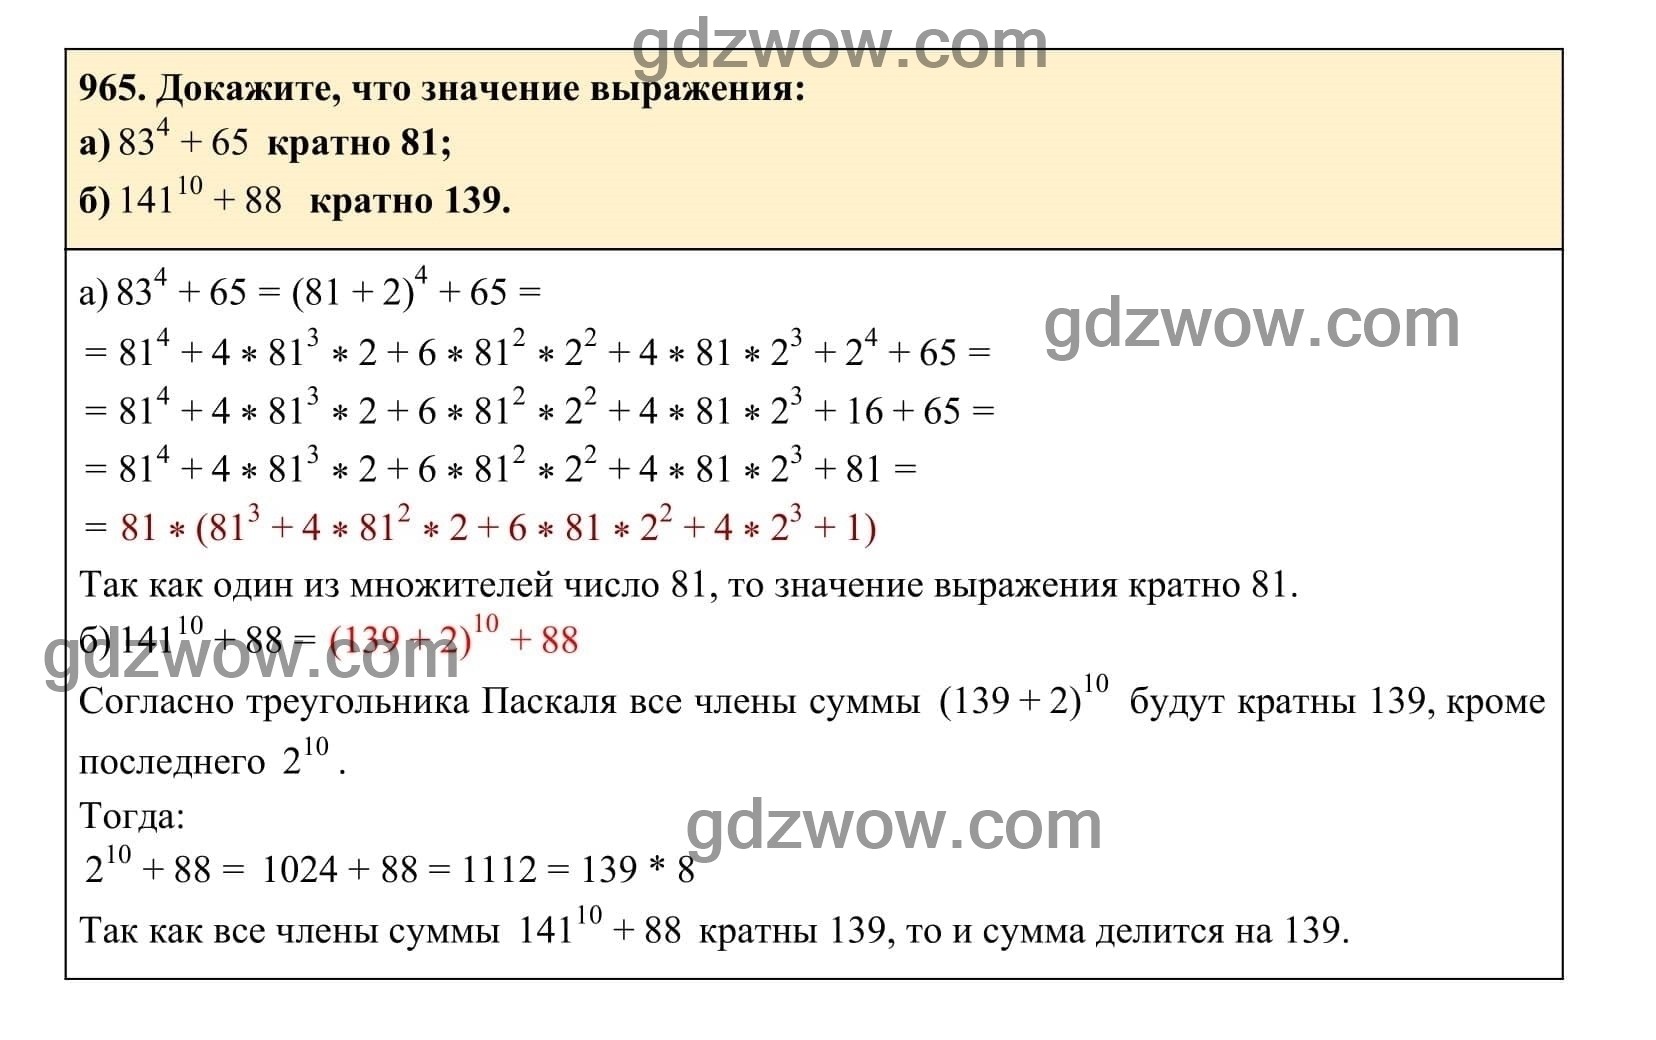 Упражнение 965 - ГДЗ по Алгебре 7 класс Учебник Макарычев (решебник) - GDZwow